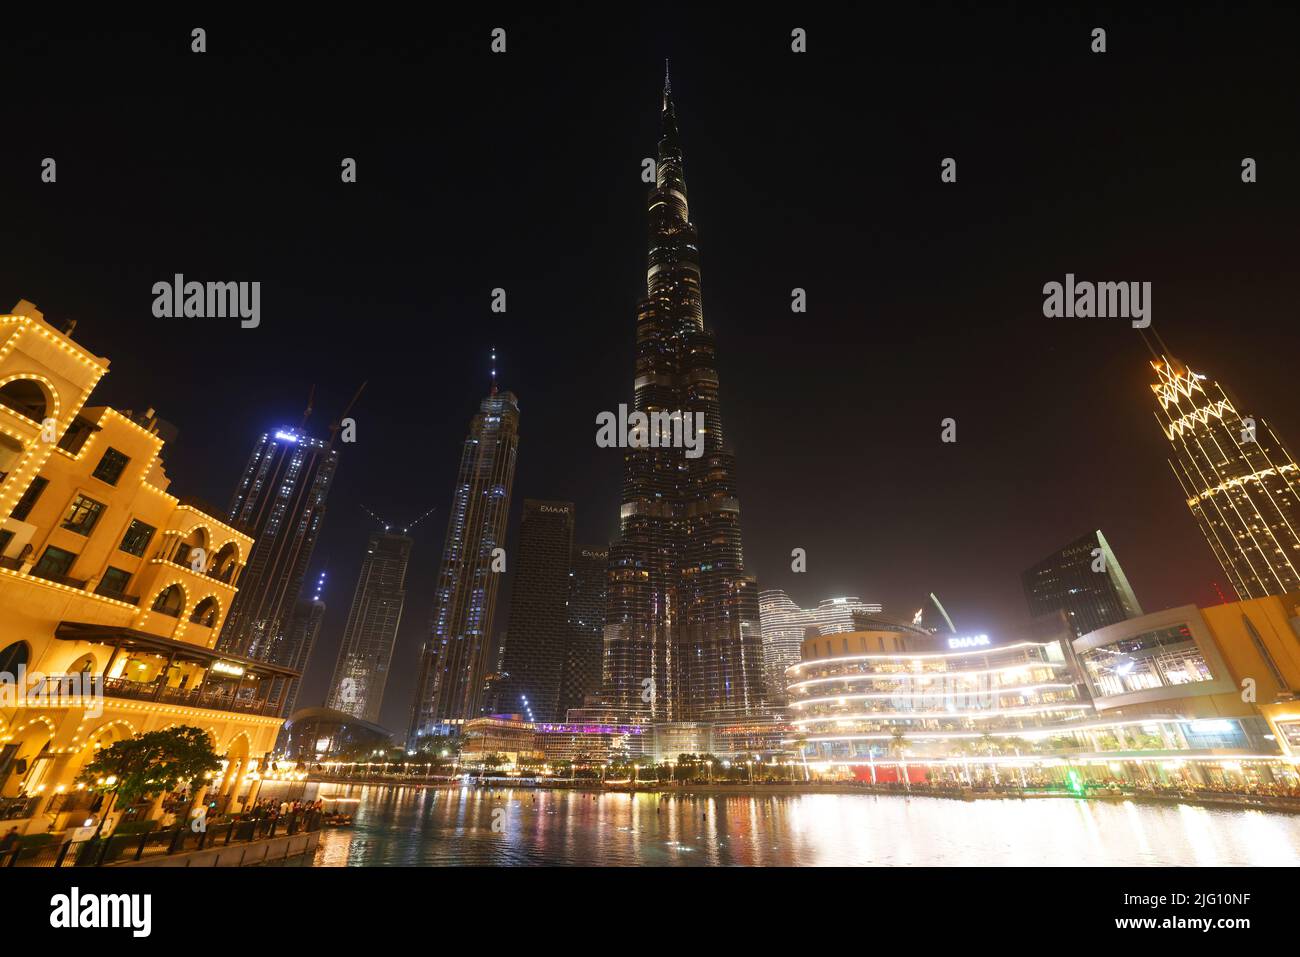 Dubai Mall, Burj Khalifa, Dubai, der höchste Wolkenkratzer der Welt mit Beleuchtung Foto Stock